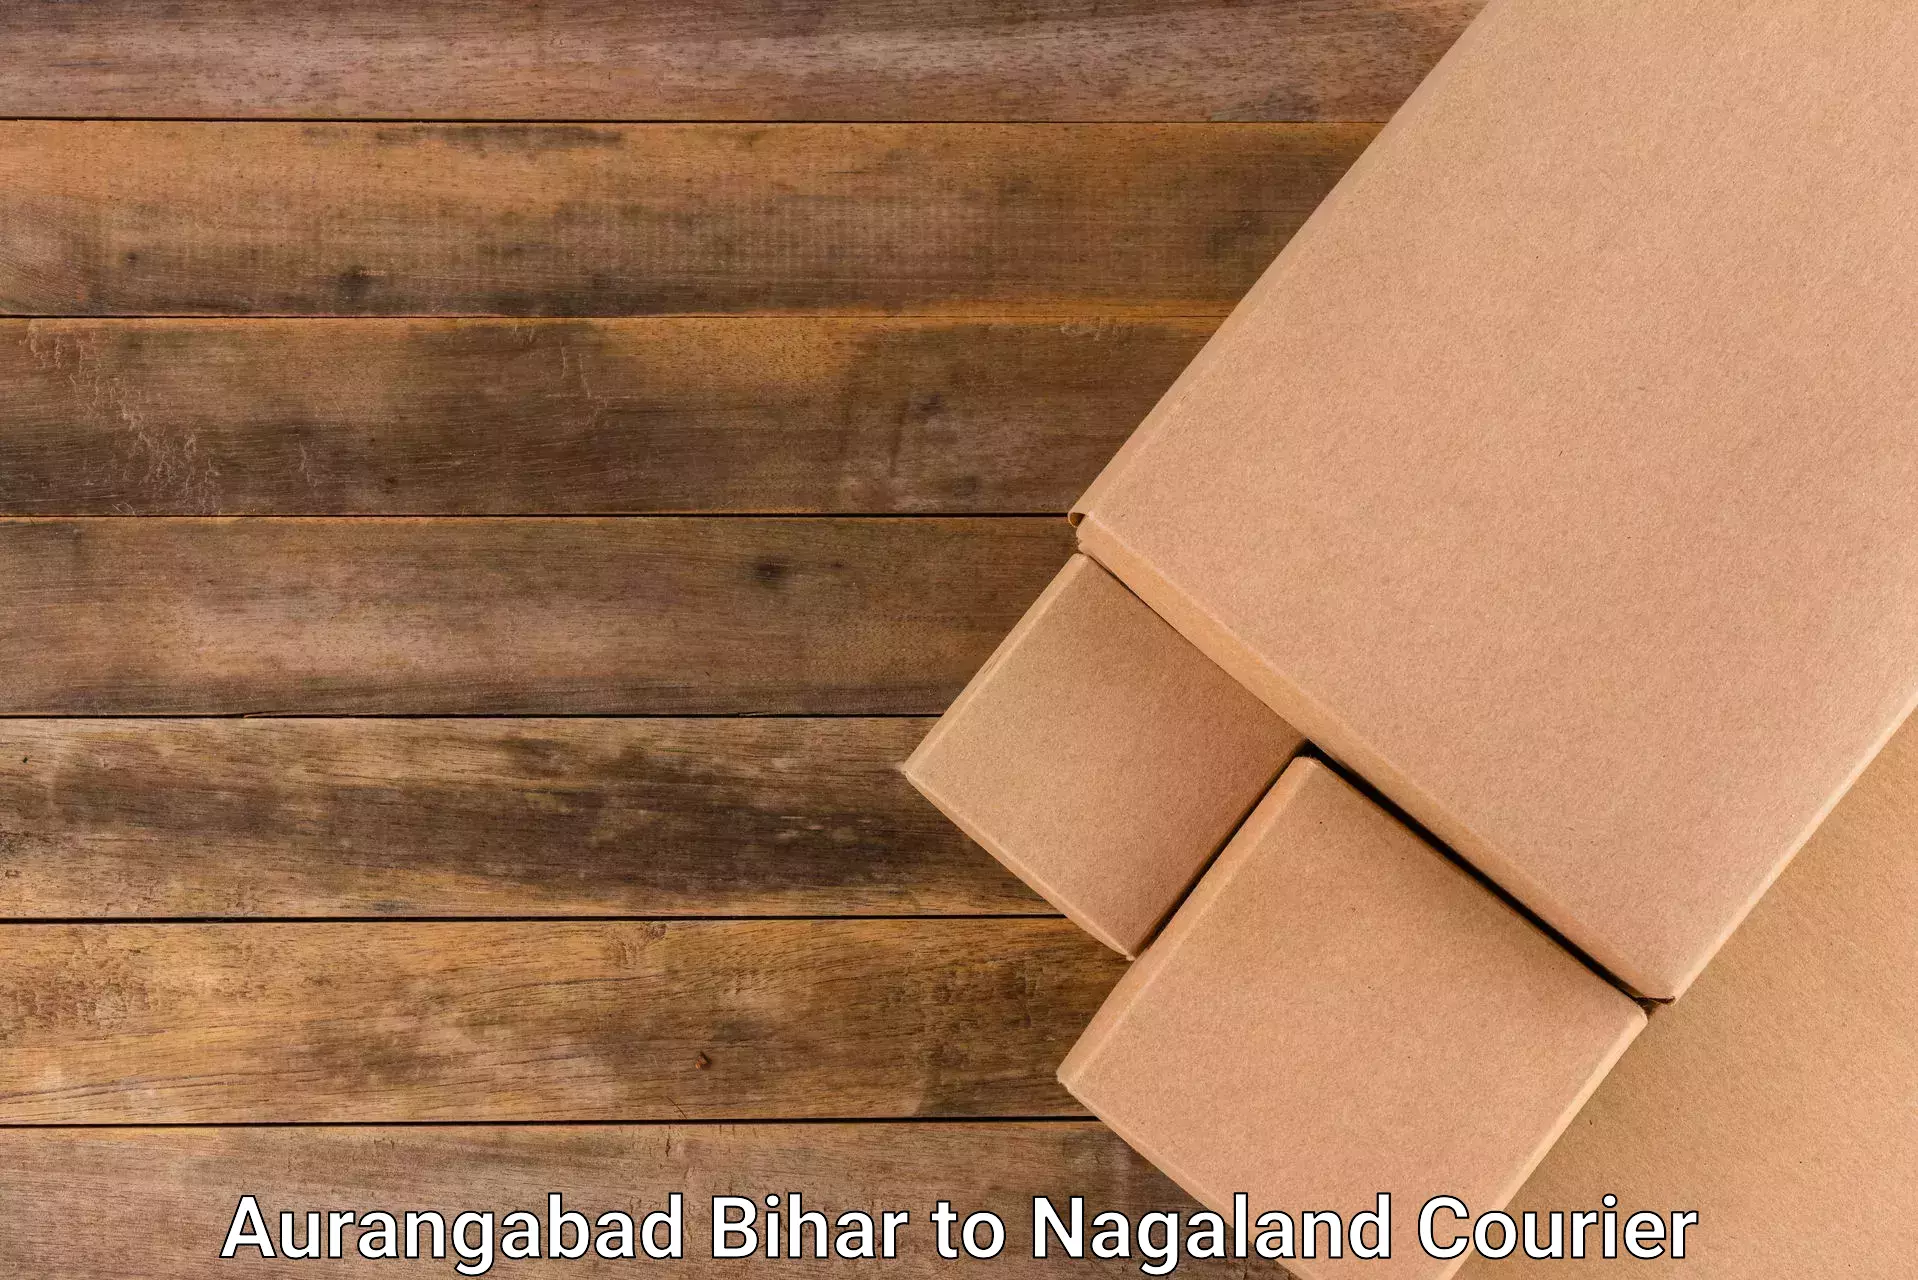 Premium courier solutions Aurangabad Bihar to Longleng